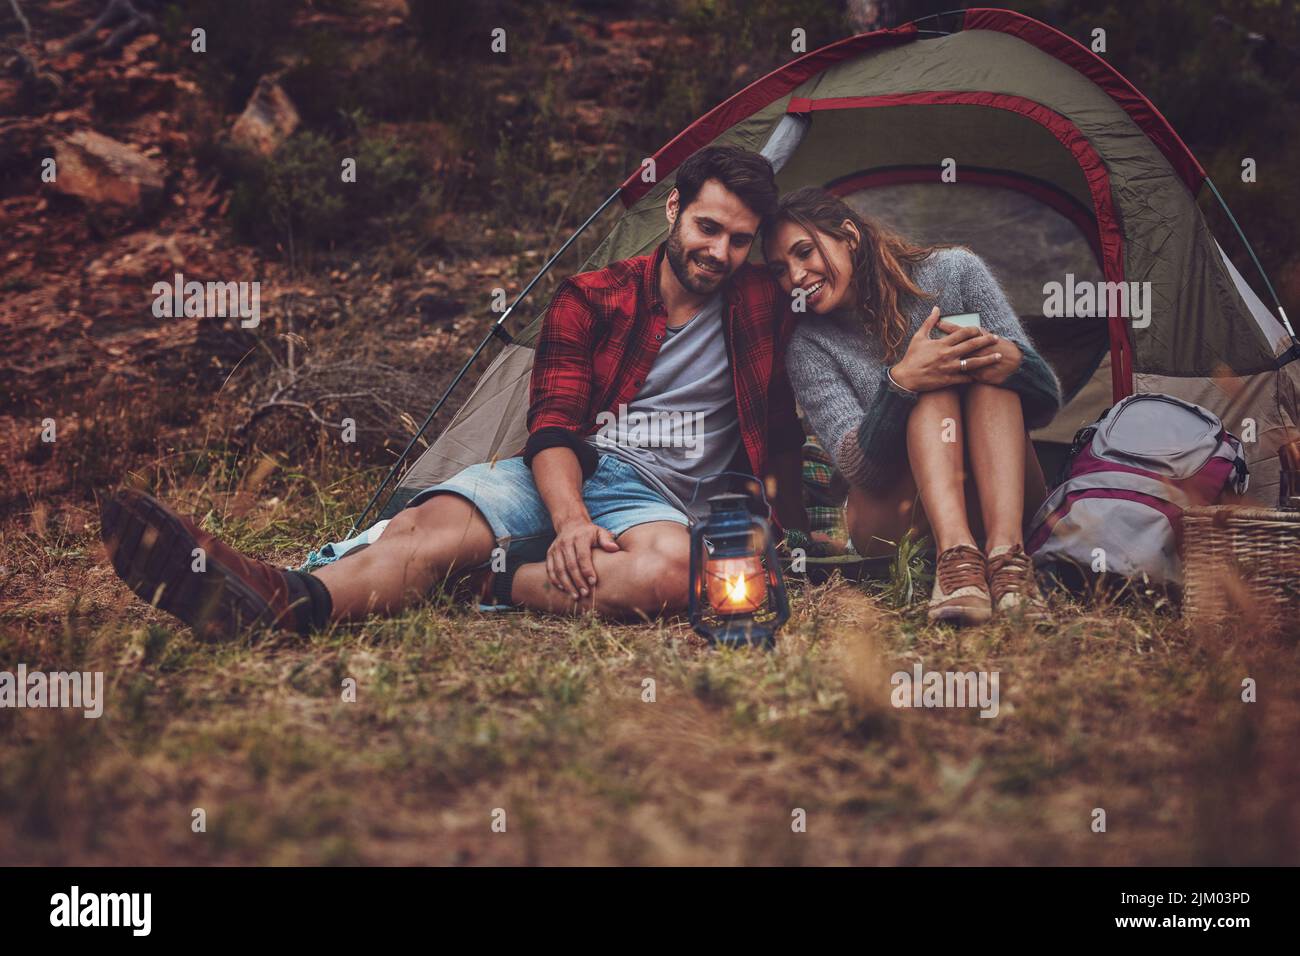 Feliz pareja joven sentada cerca de una tienda de camping en la noche. Pareja joven disfrutando juntos de unas vacaciones de camping. Foto de stock